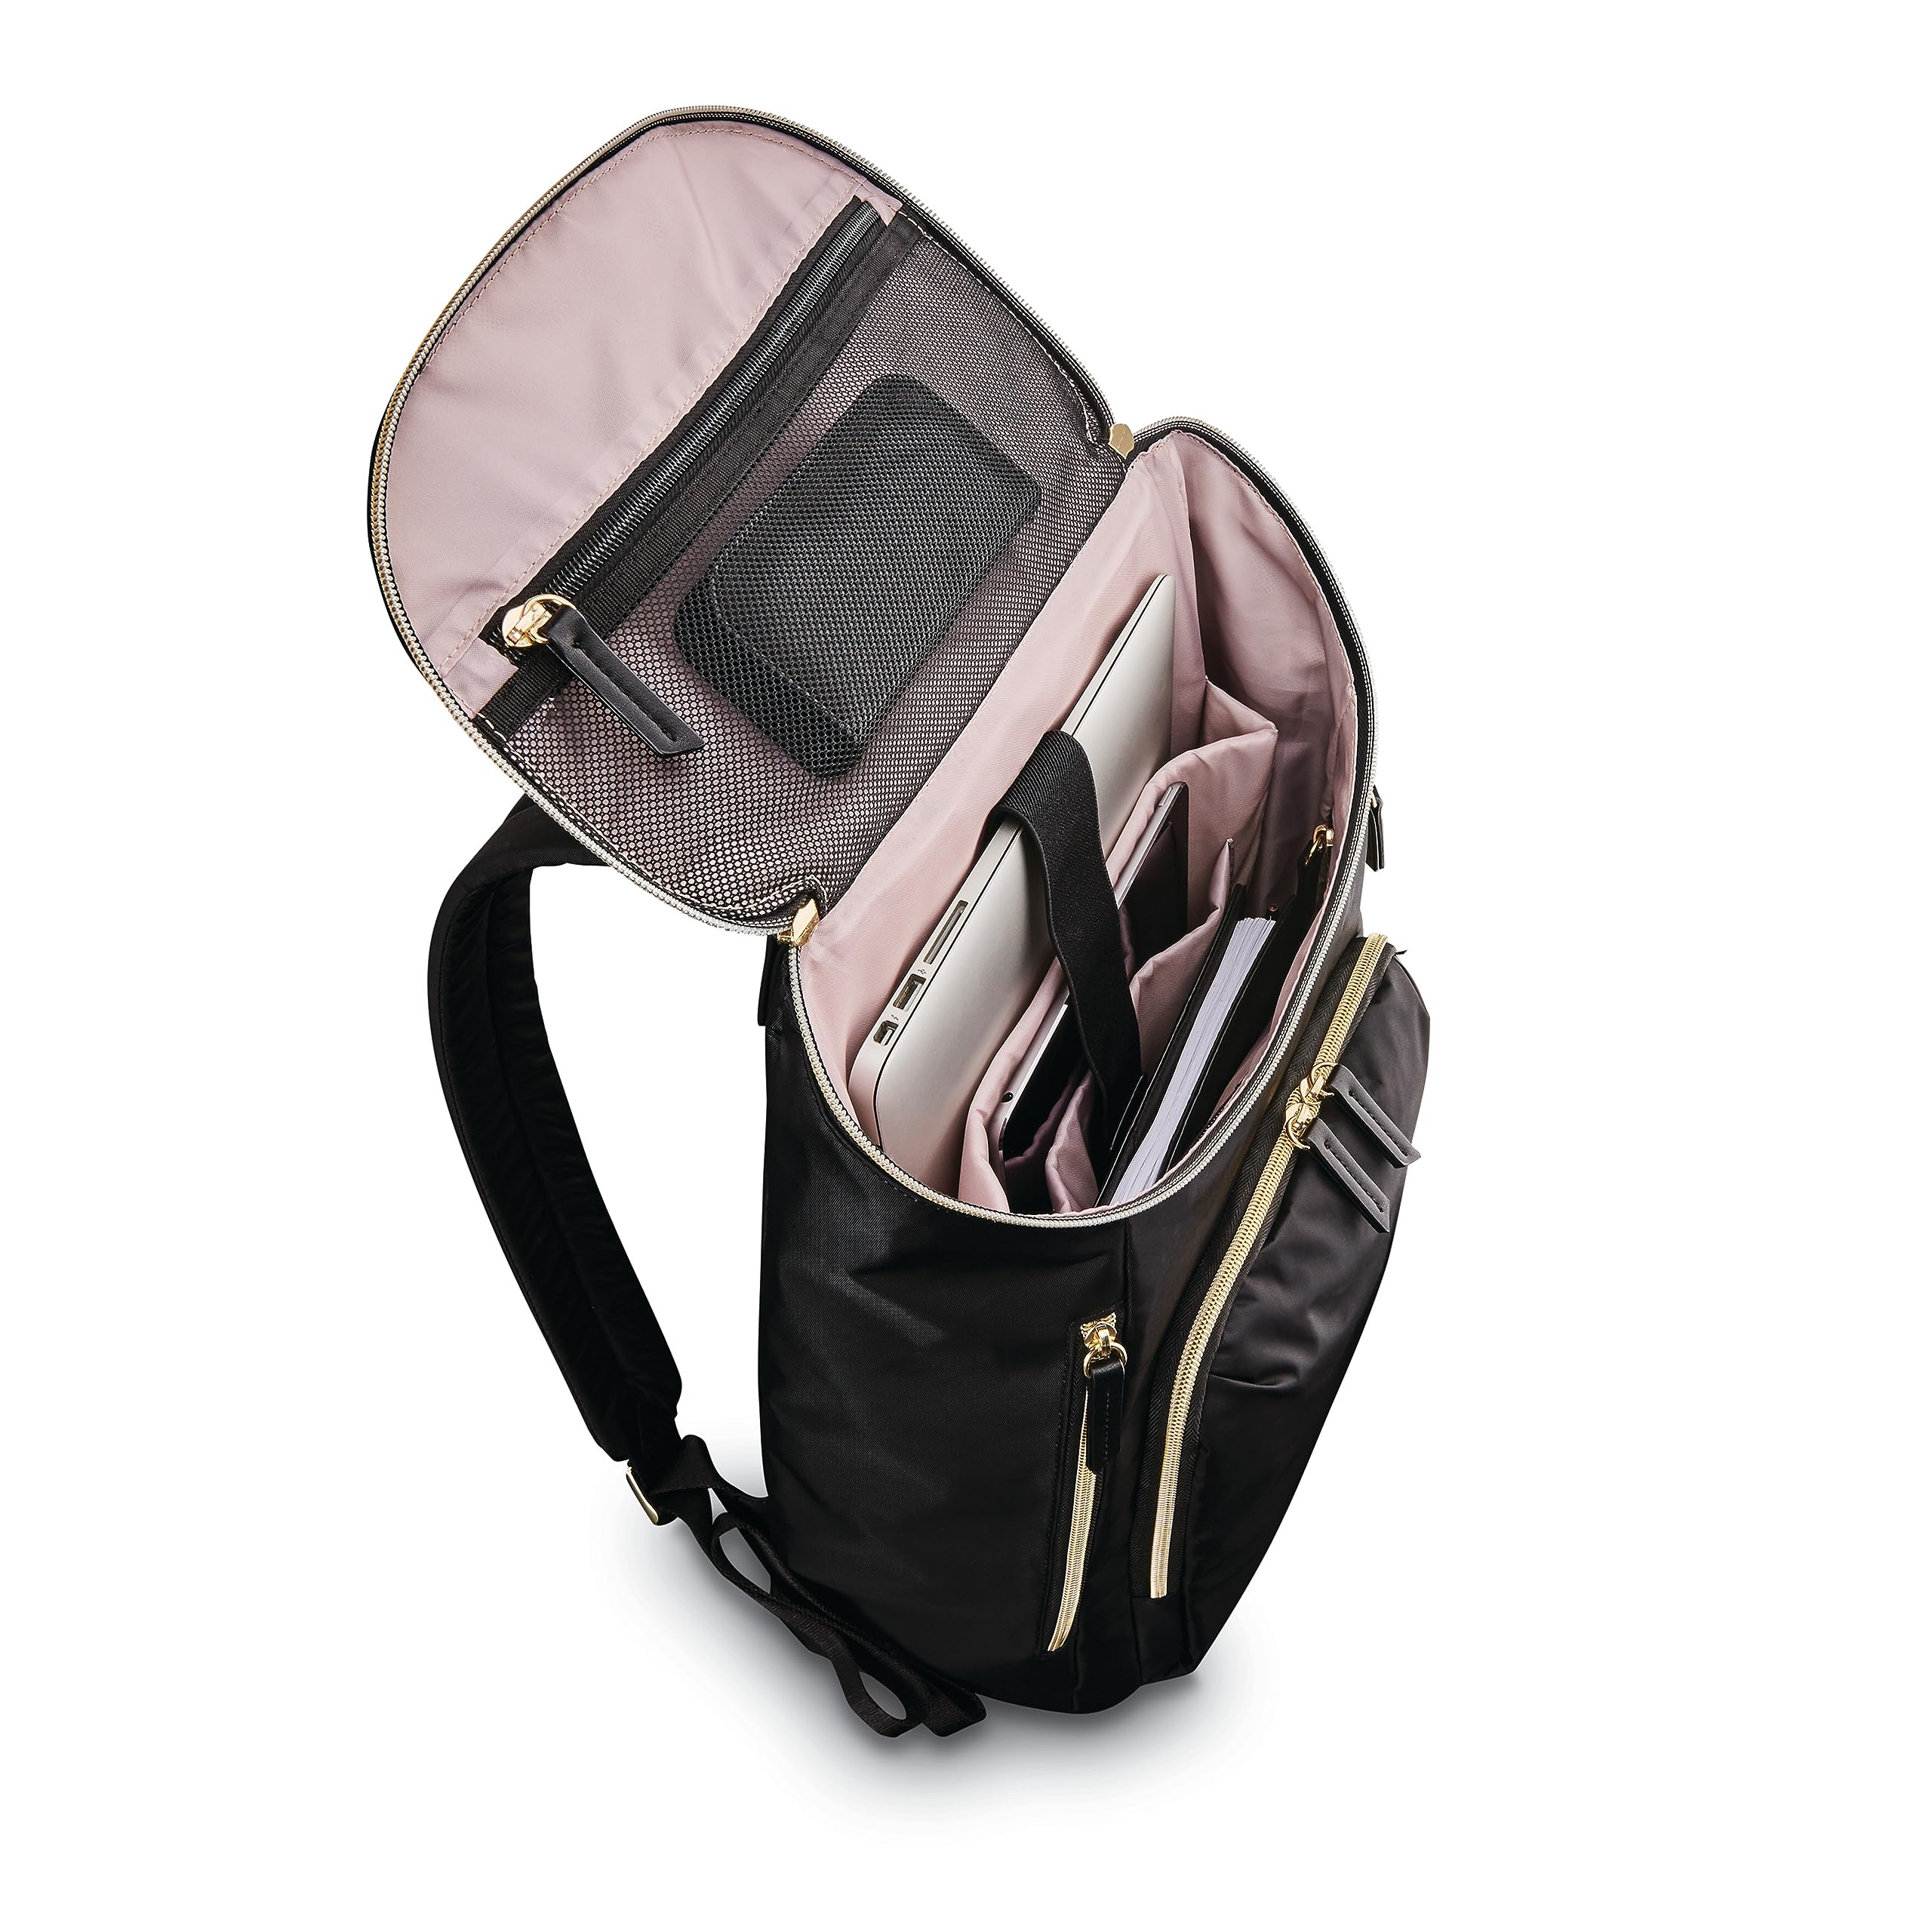 Samsonite Mobile Solution Deluxe Backpack, Black